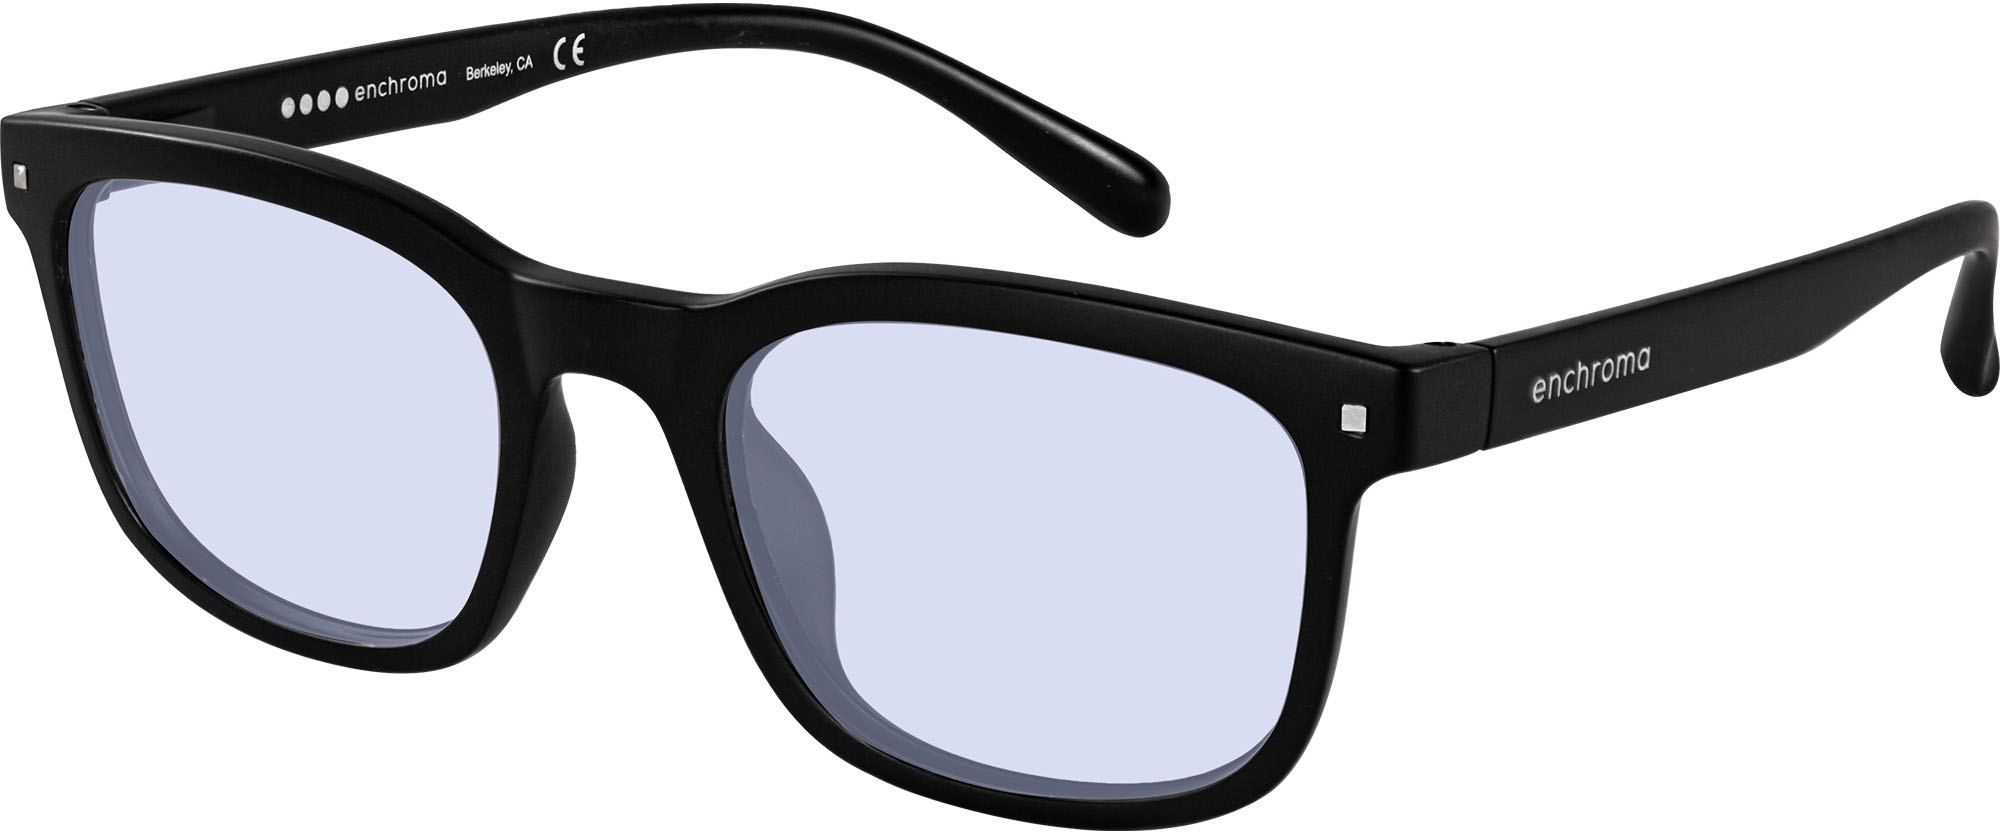 Best Buy: Enchroma Grayson Cx1 Indoor DT Color Blind Glasses Matte ...